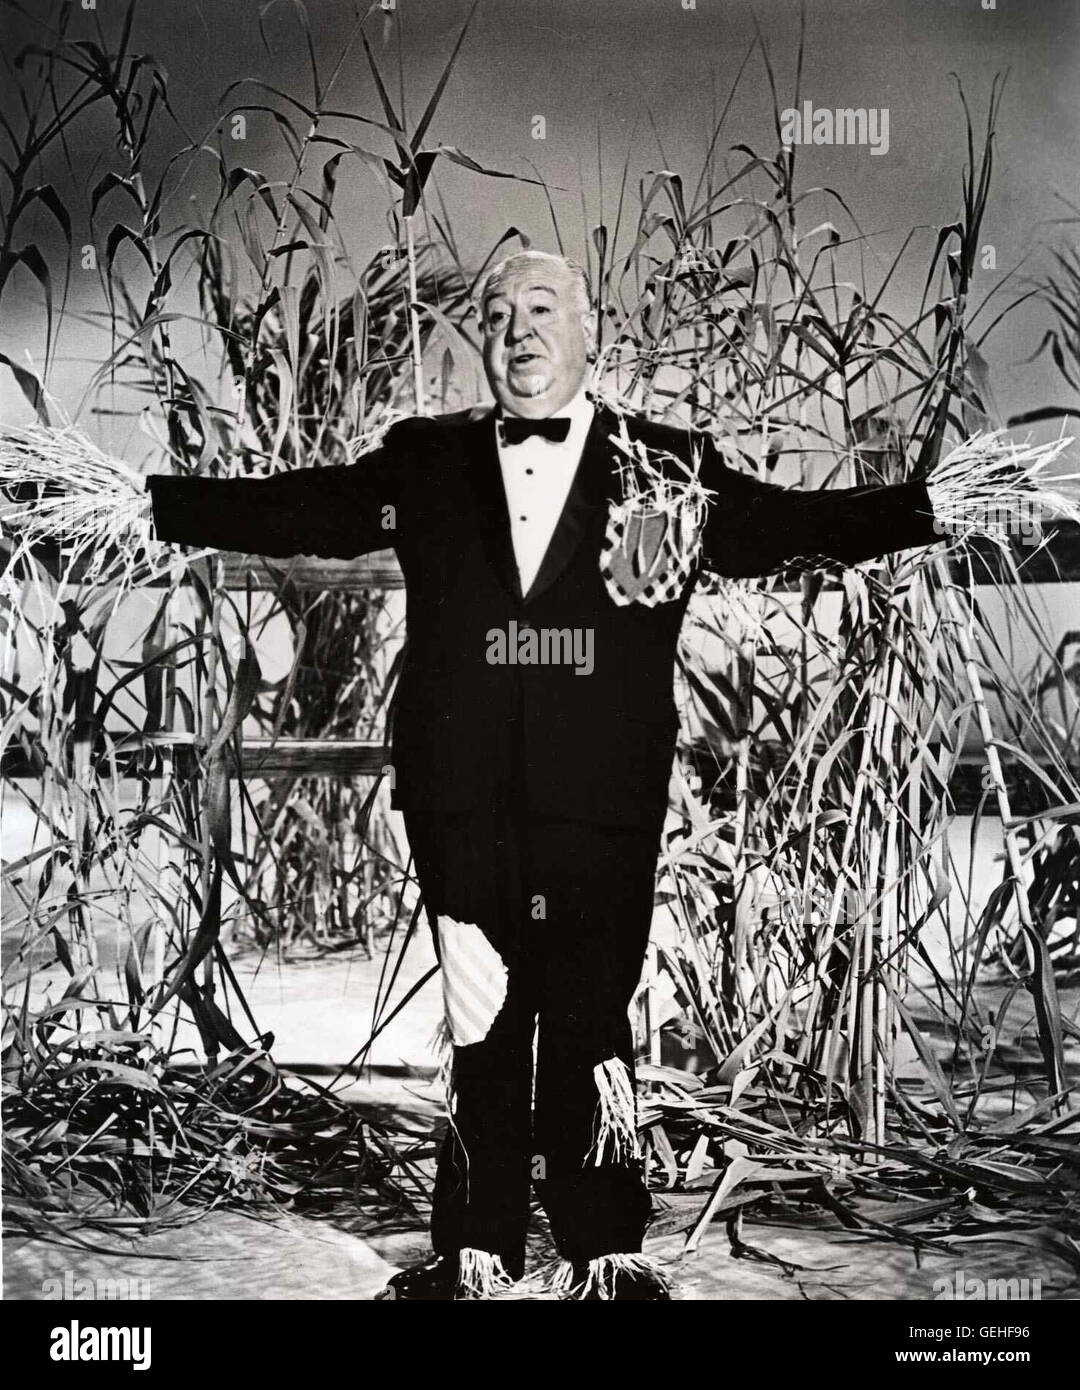 Alfred Hitchcock Presents - una mezza ora antologia di serie televisive  ospitato dal direttore britannico Alfred Hitchcock. La serie featured  entrambi i misteri e melodrammi. Premiere su 2. Ott. 1955. Picutre: Alfred